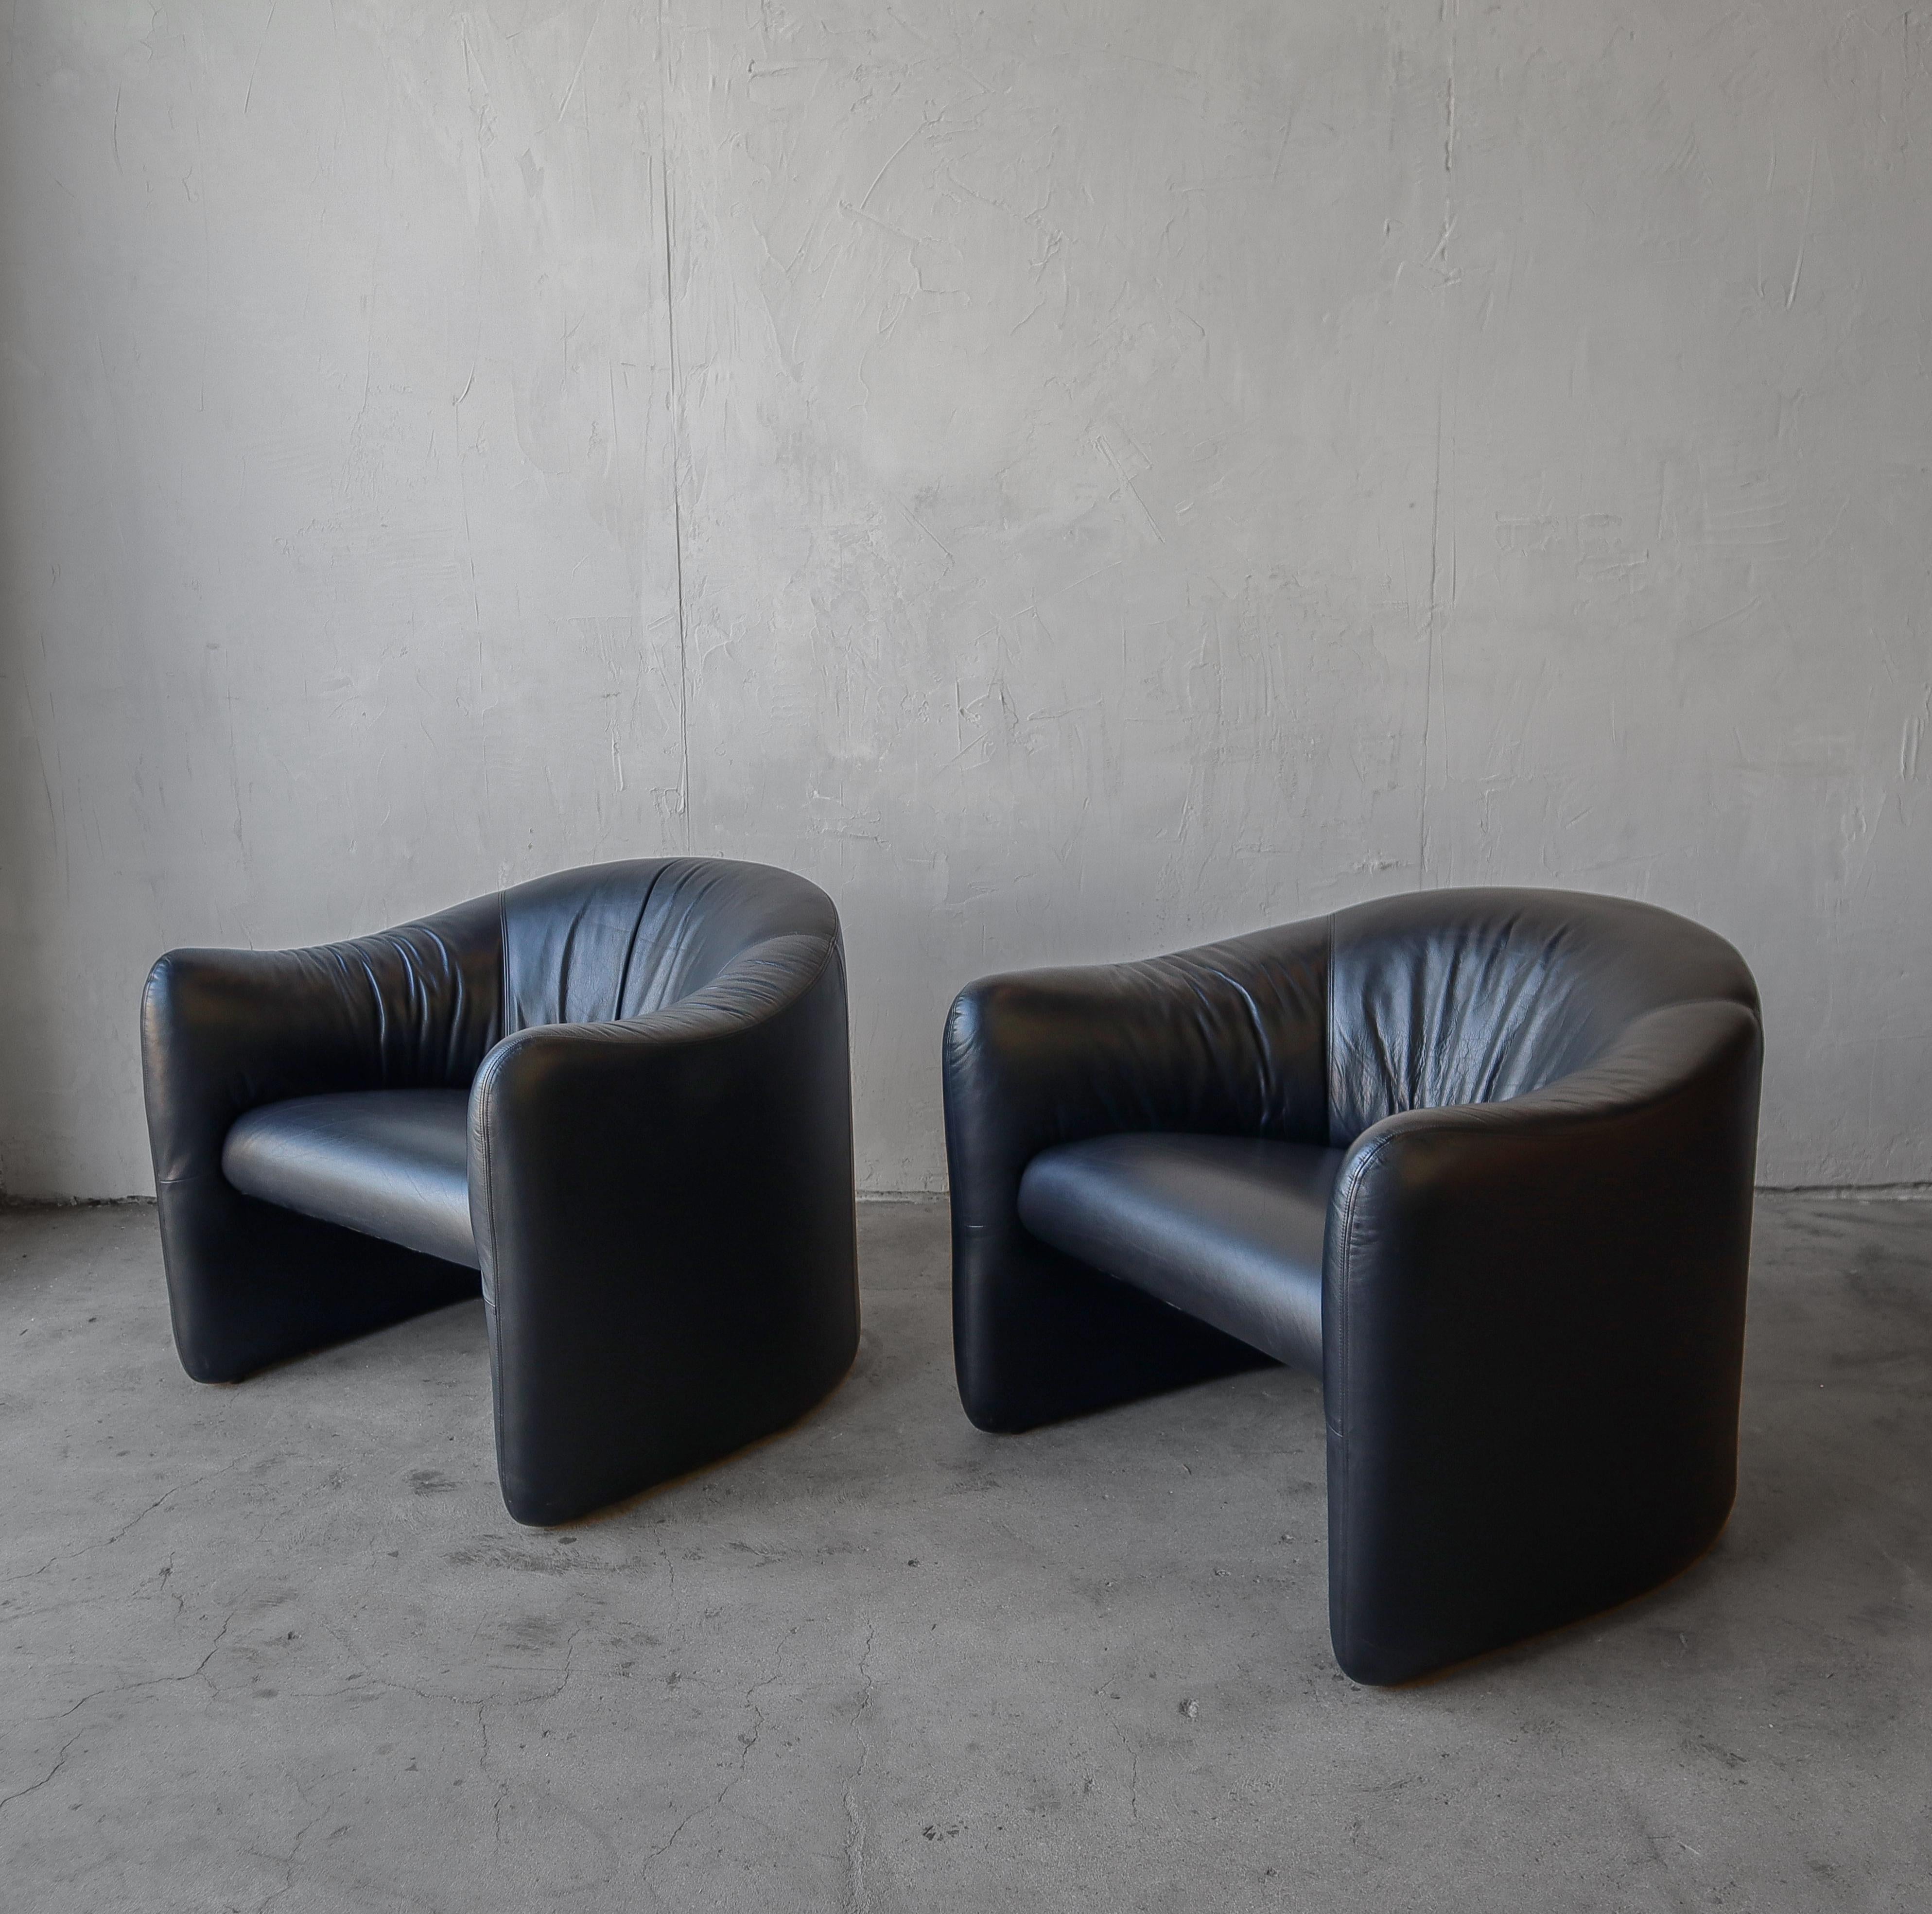 Belle paire de chaises longues post-modernes originales de Jules Heumann pour Metropolitan Furniture. 

Le cuir noir d'origine est en excellent état et présente une patine appropriée à l'âge, mais aucun dommage ni usure significative. Pas d'odeurs